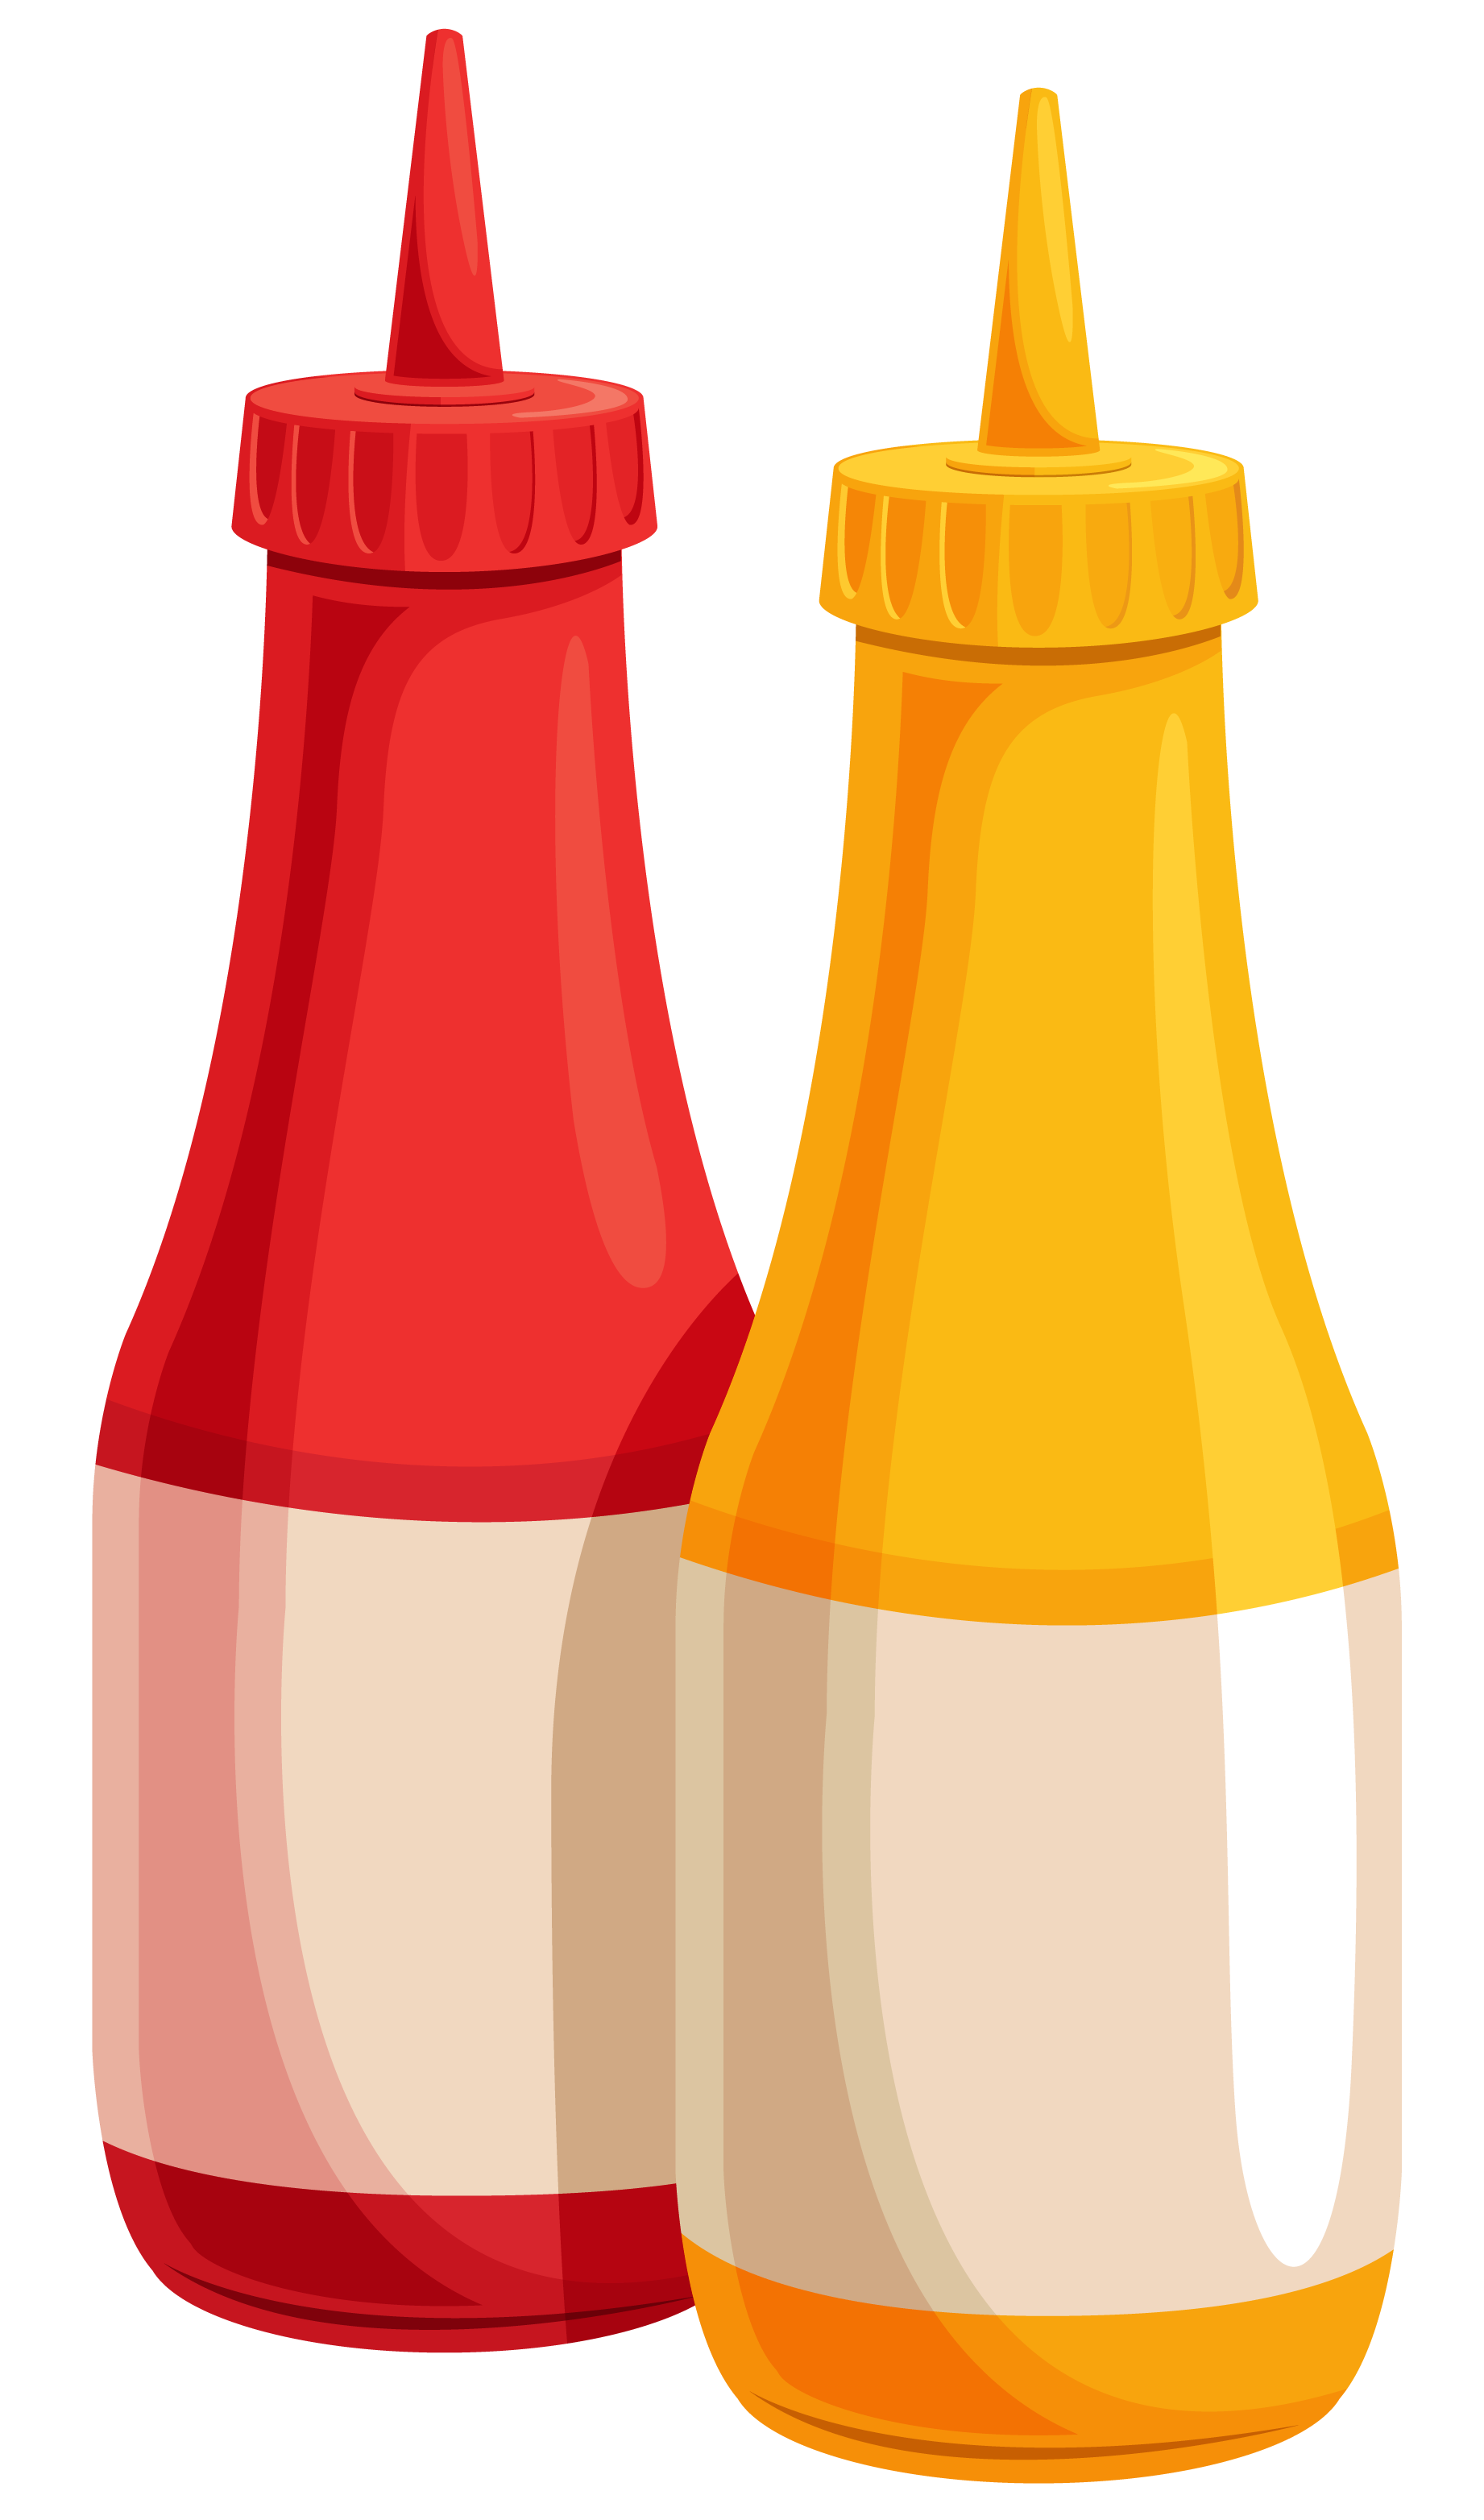 Ketchup bottle clip art 